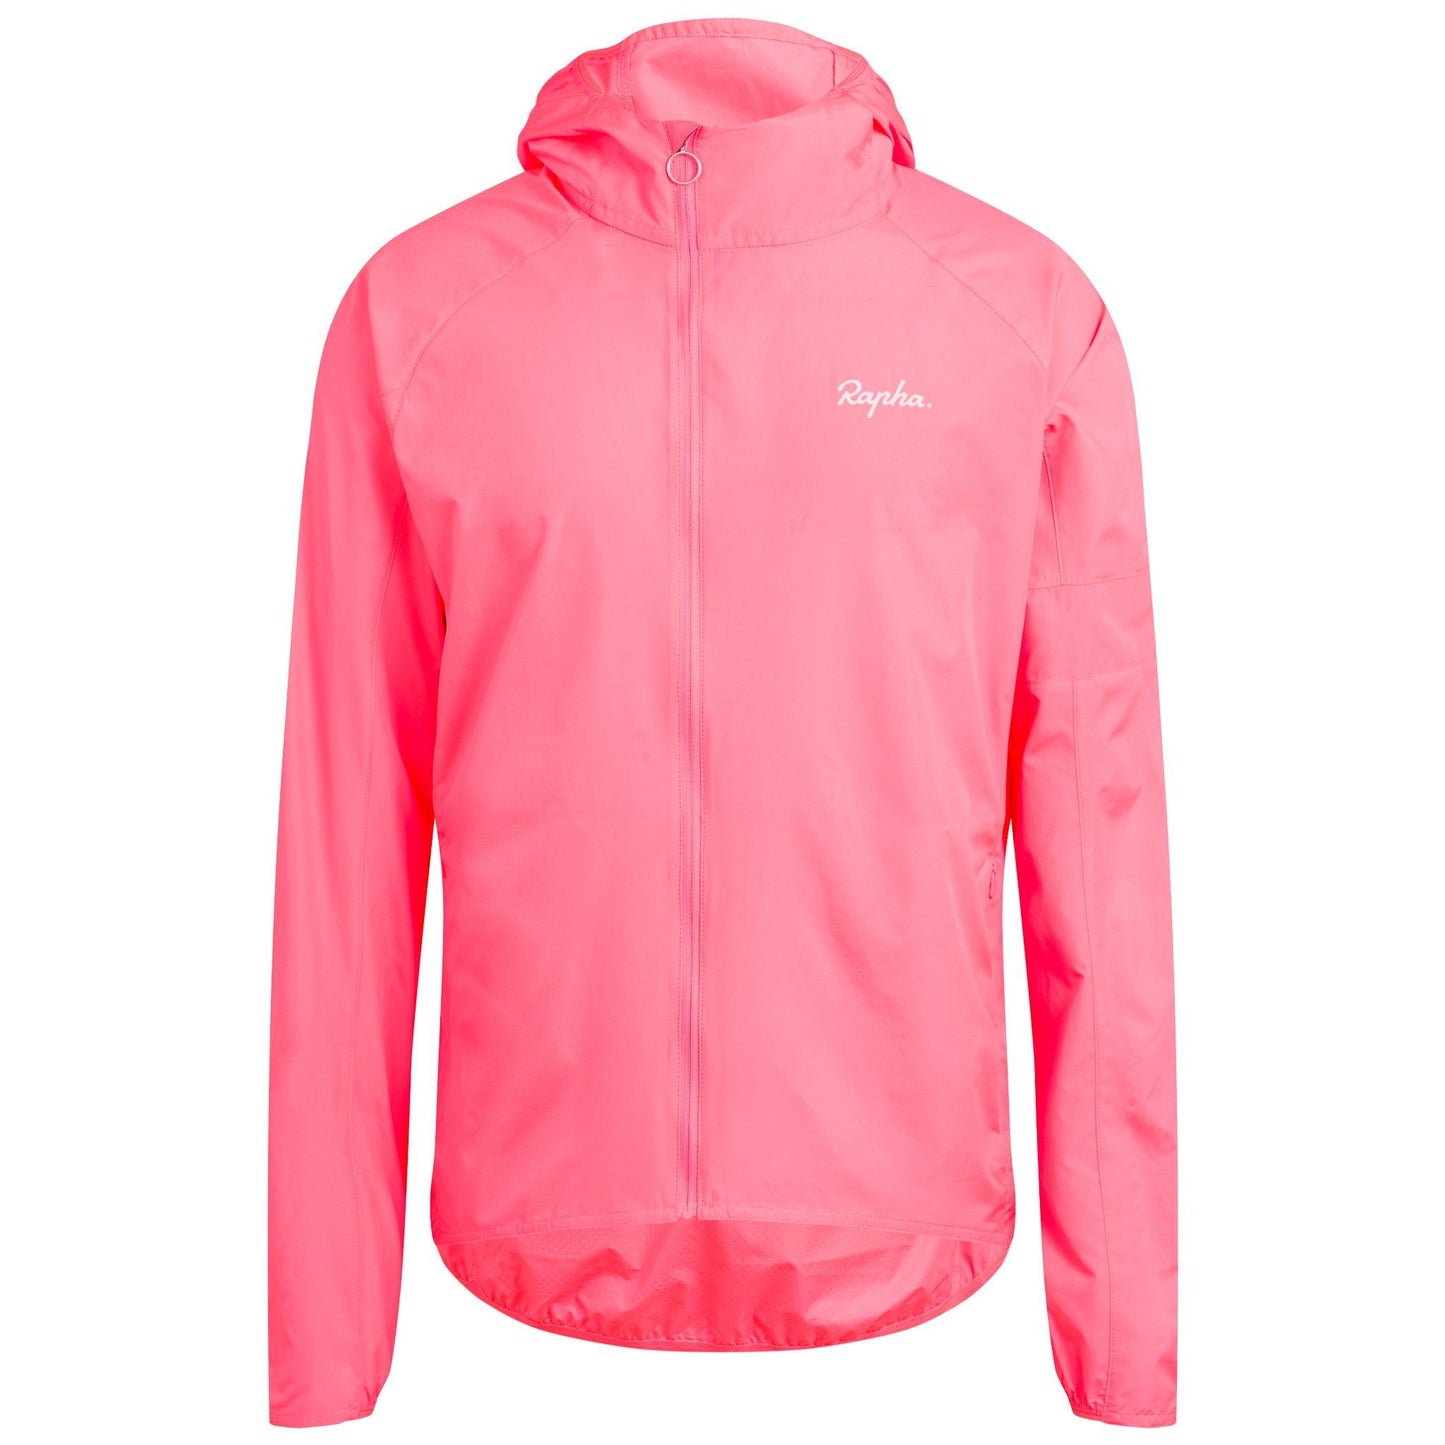 Rapha Mens Commuter Lightweight Jacket, Hi-Vis Pink buy now at Woolys Wheels Sydney